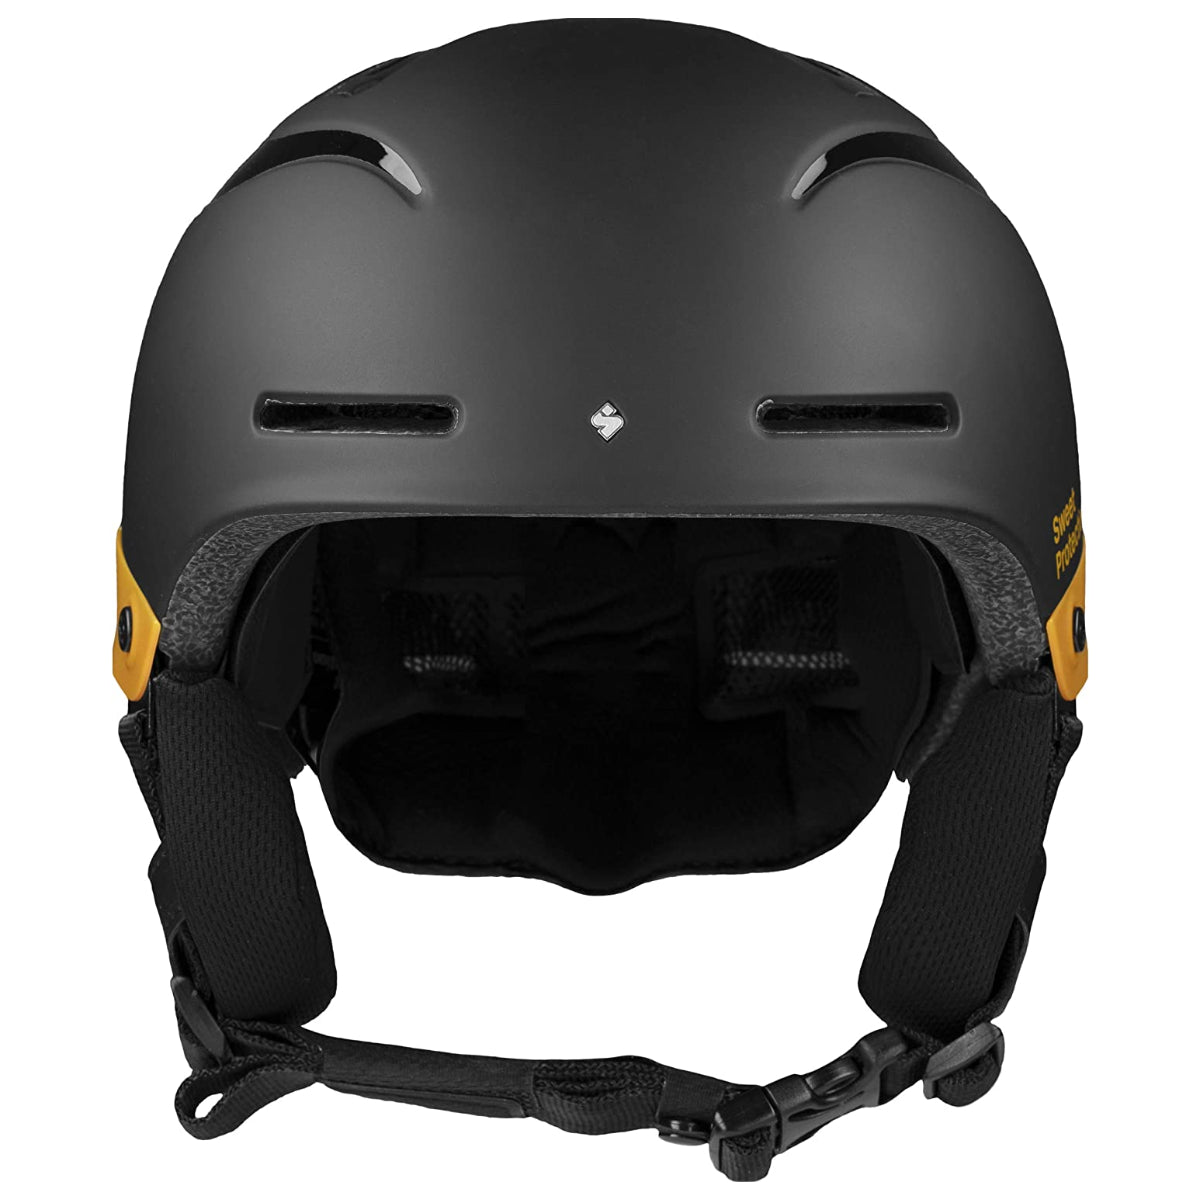 Sweet Protection - Blaster II Helmet JR - Dirt Black / Brown Tundra